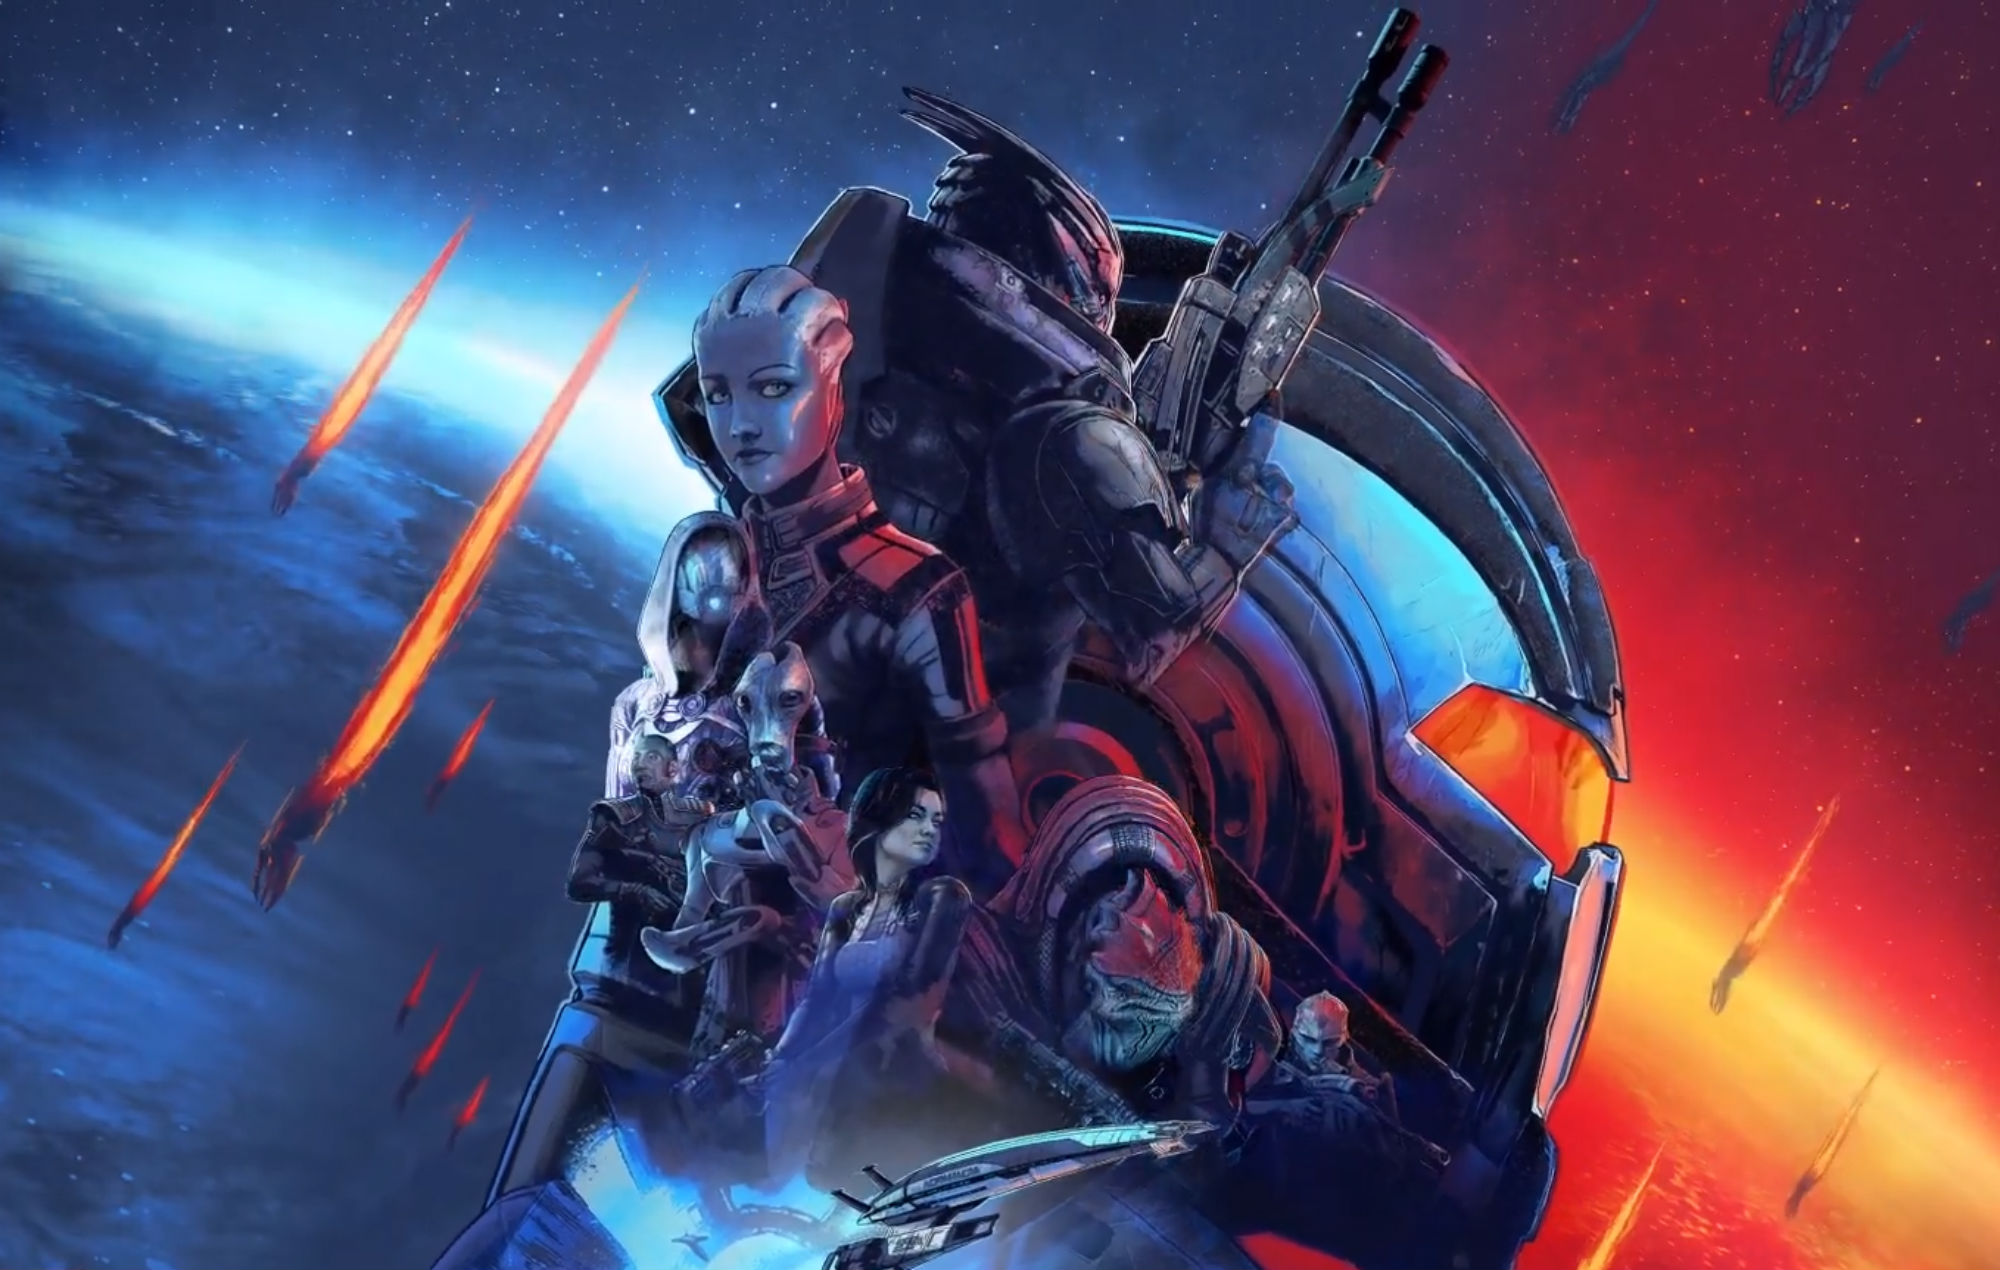 Mass Effect™ издание Legendary for windows download